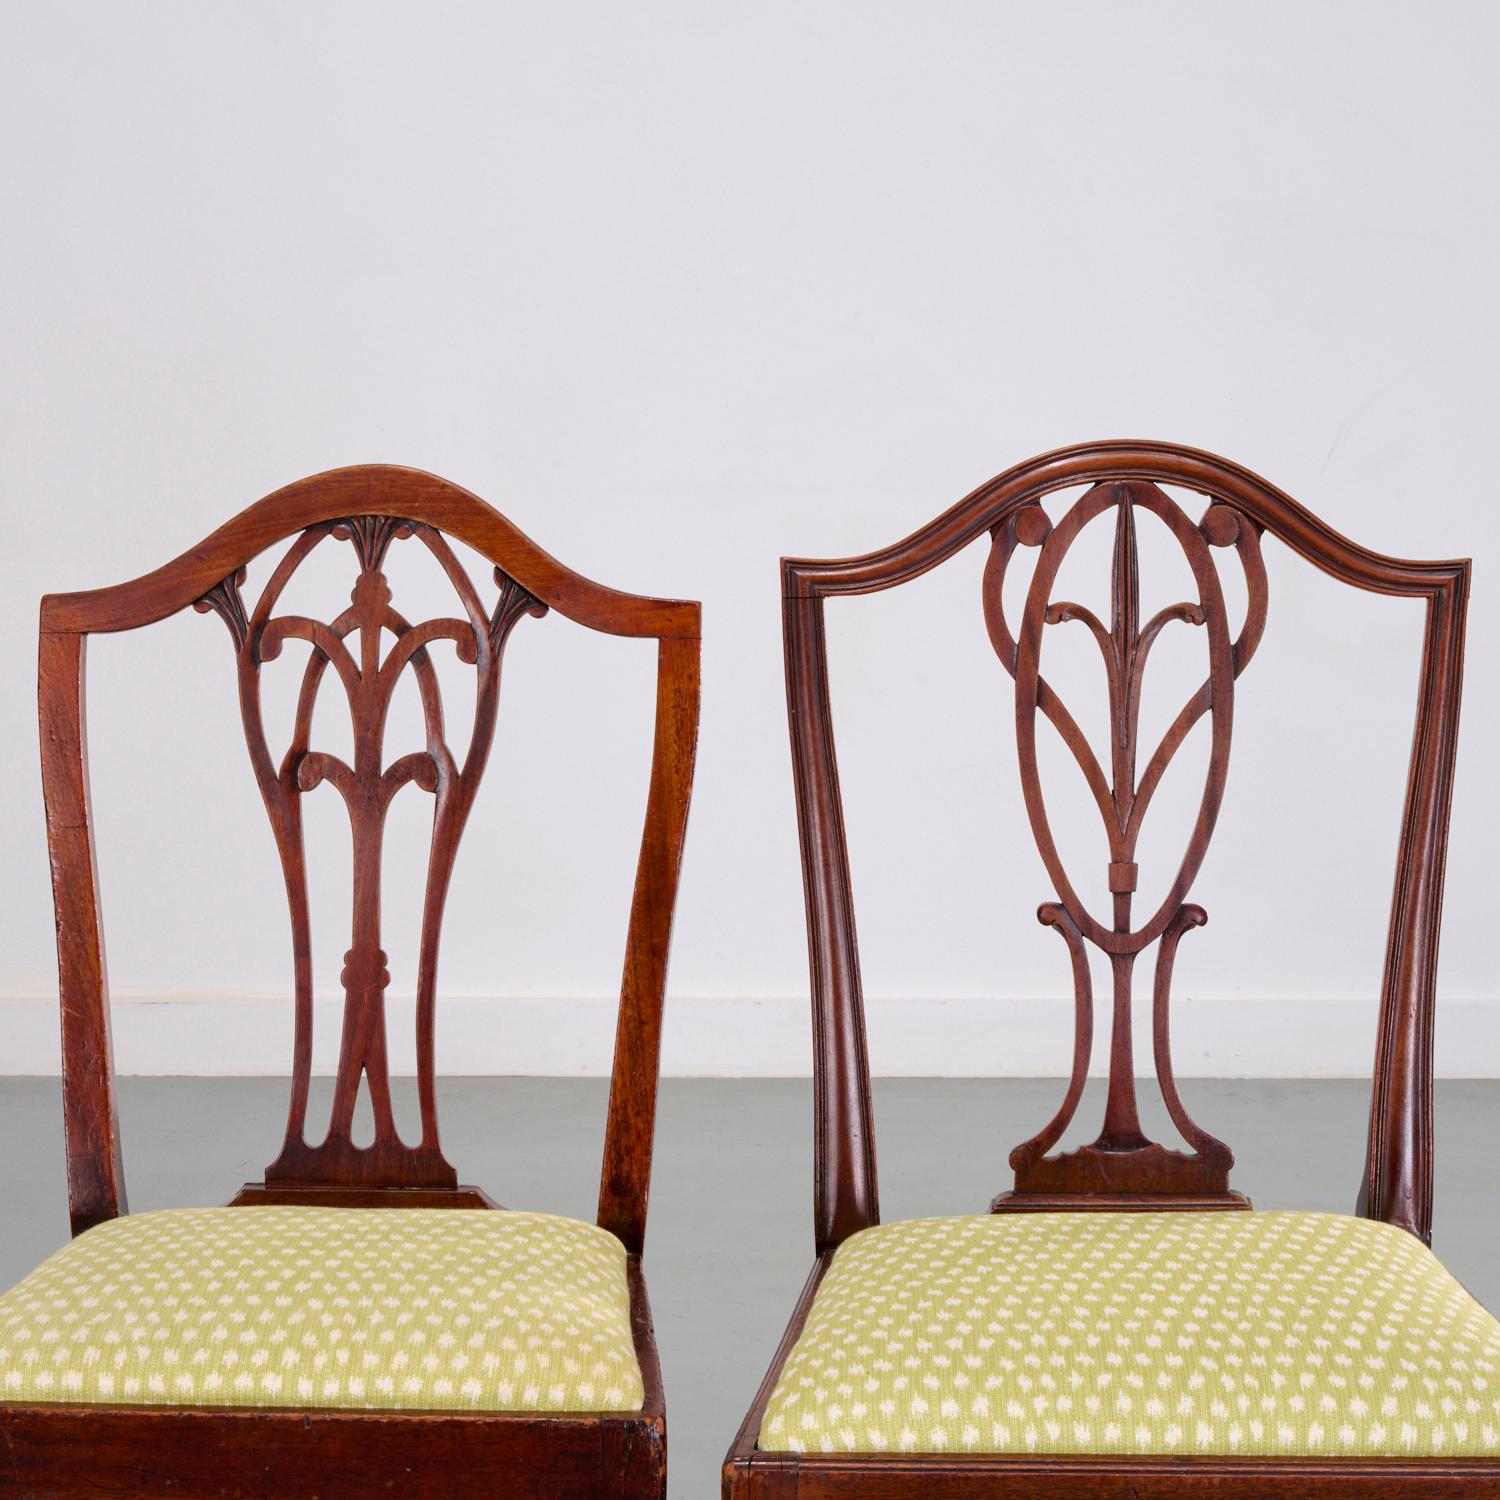 A.I.C. et plus tard, Angleterre, ensemble de chaises de salle à manger assemblées dans le style Hepplewhite,  (6) chaises d'appoint à dossier percé, et (6) chaises d'appoint de conception similaire, toutes en acajou avec des sièges en lin vert pâle